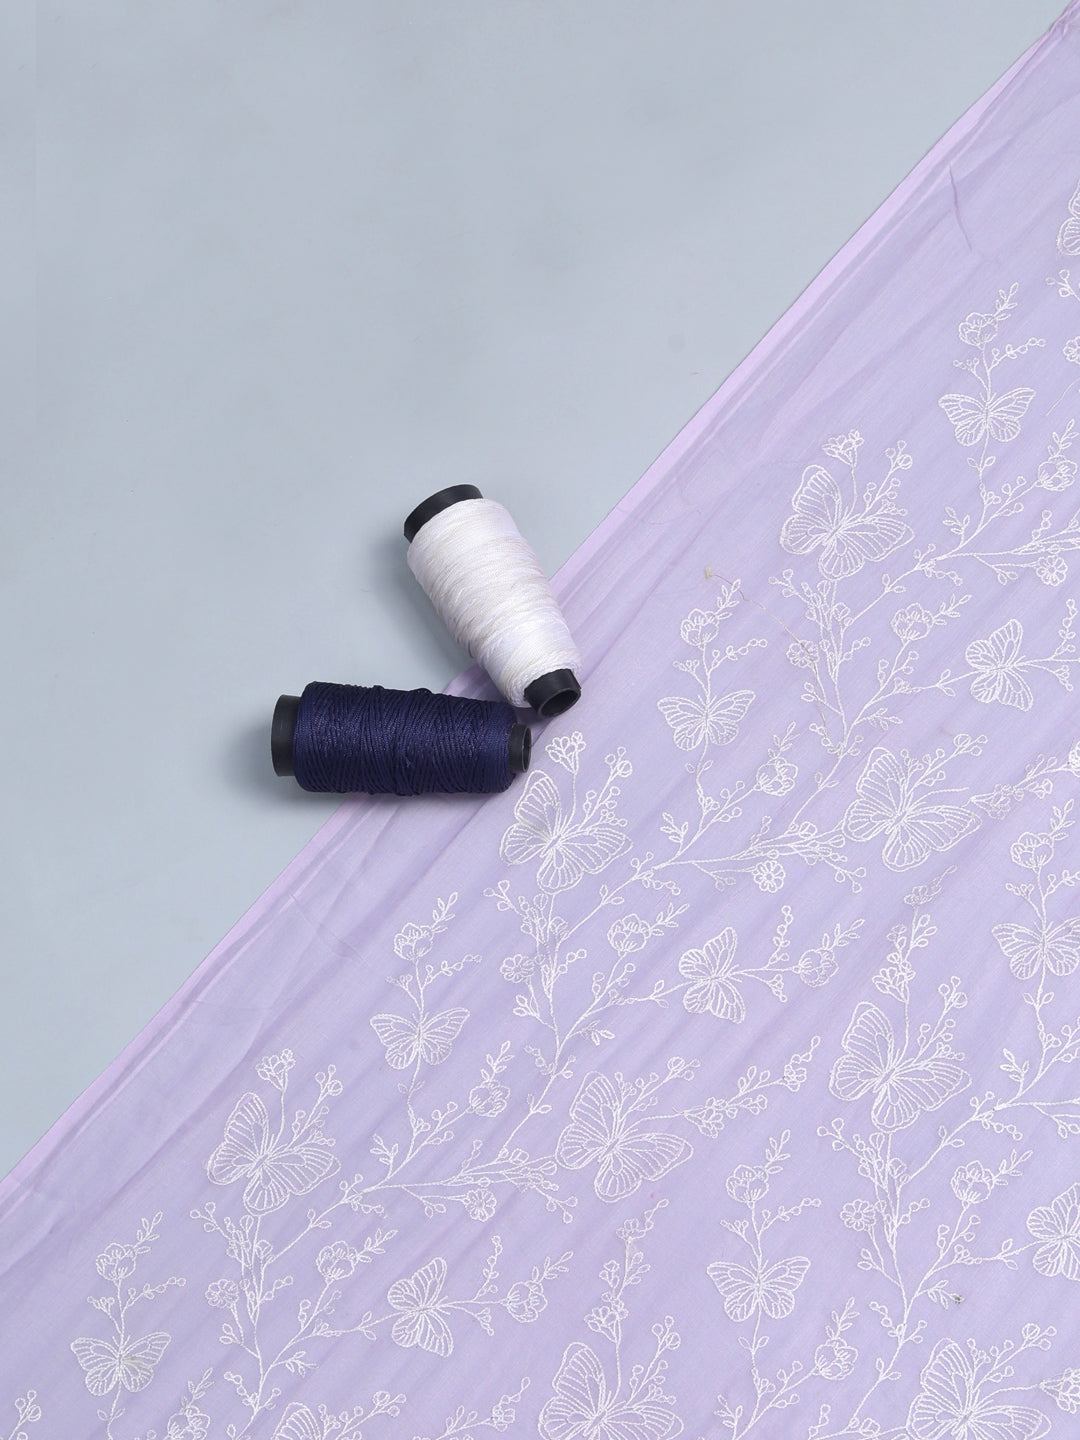 Light Purple Mul Mul Fabric